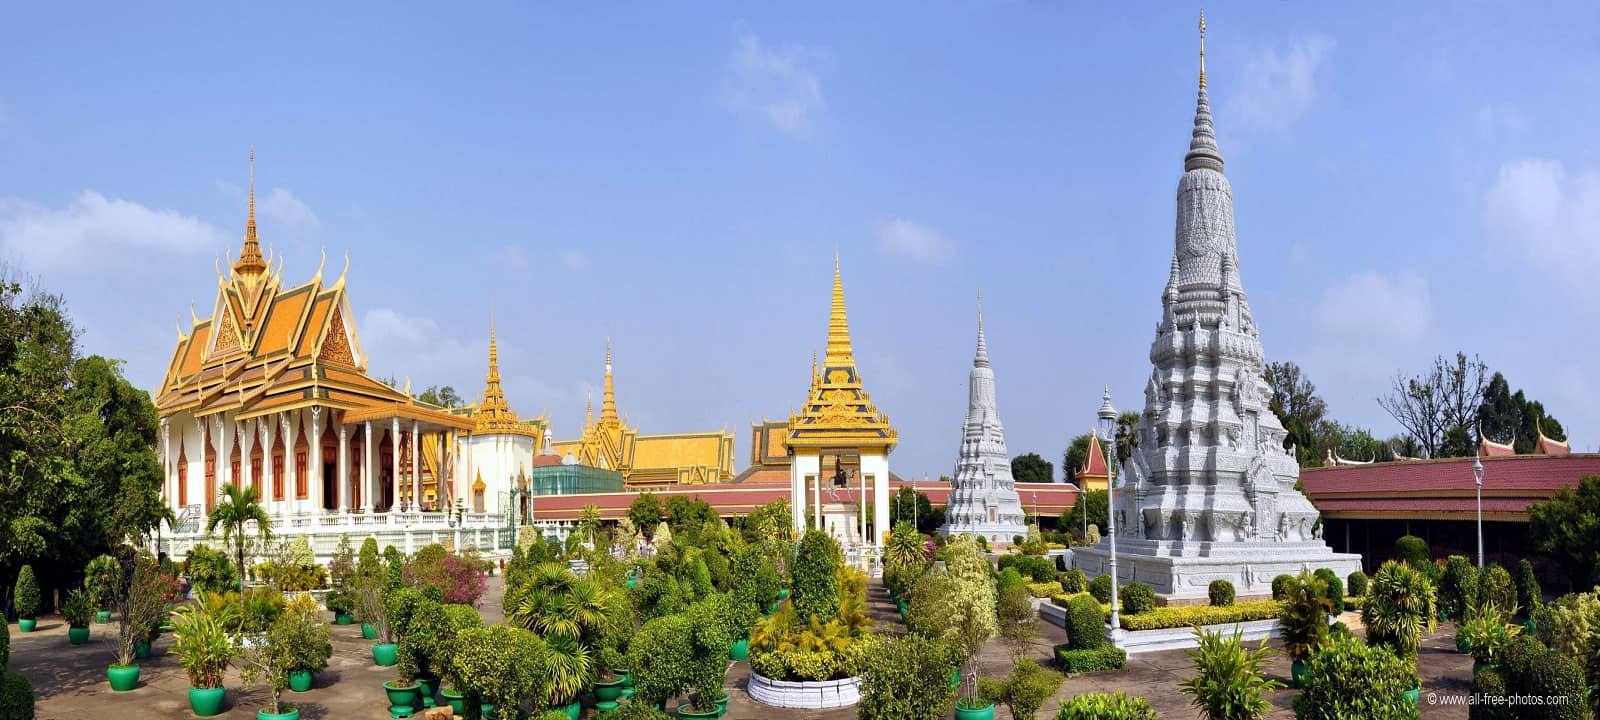 Le Palais Royal Phnom Penh et sa pagode d'argent de Phnom Penh